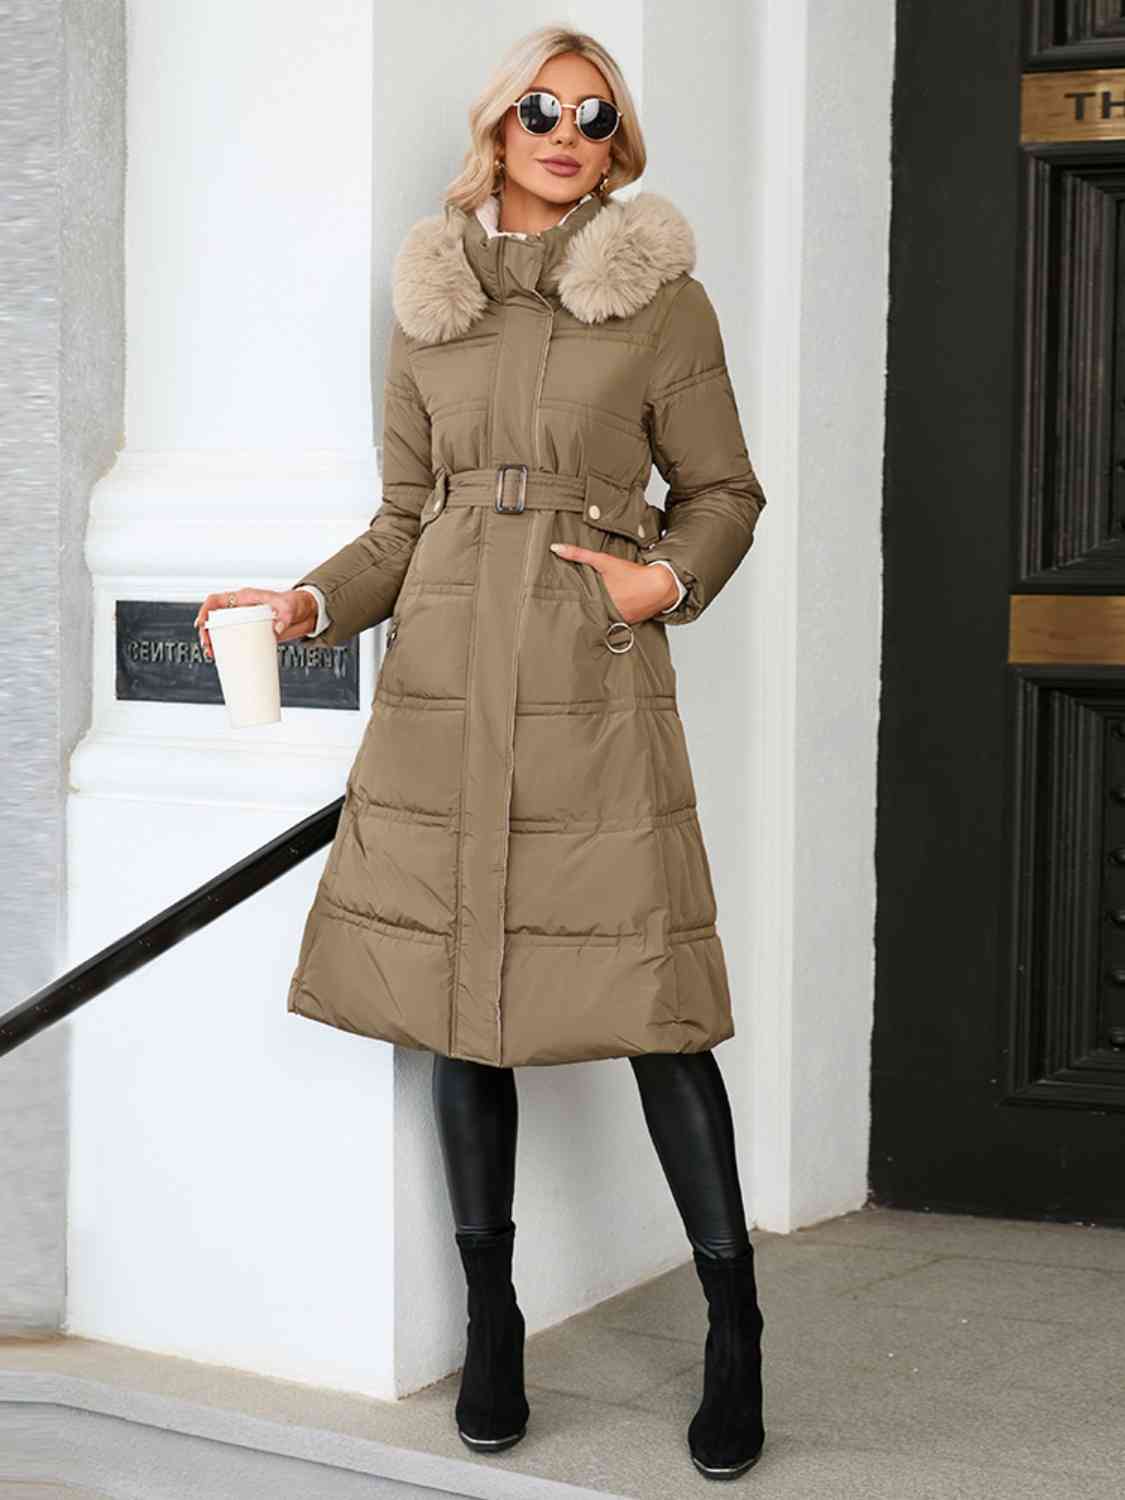 Longline Hooded Winter Coat with Pockets - Body By J'ne